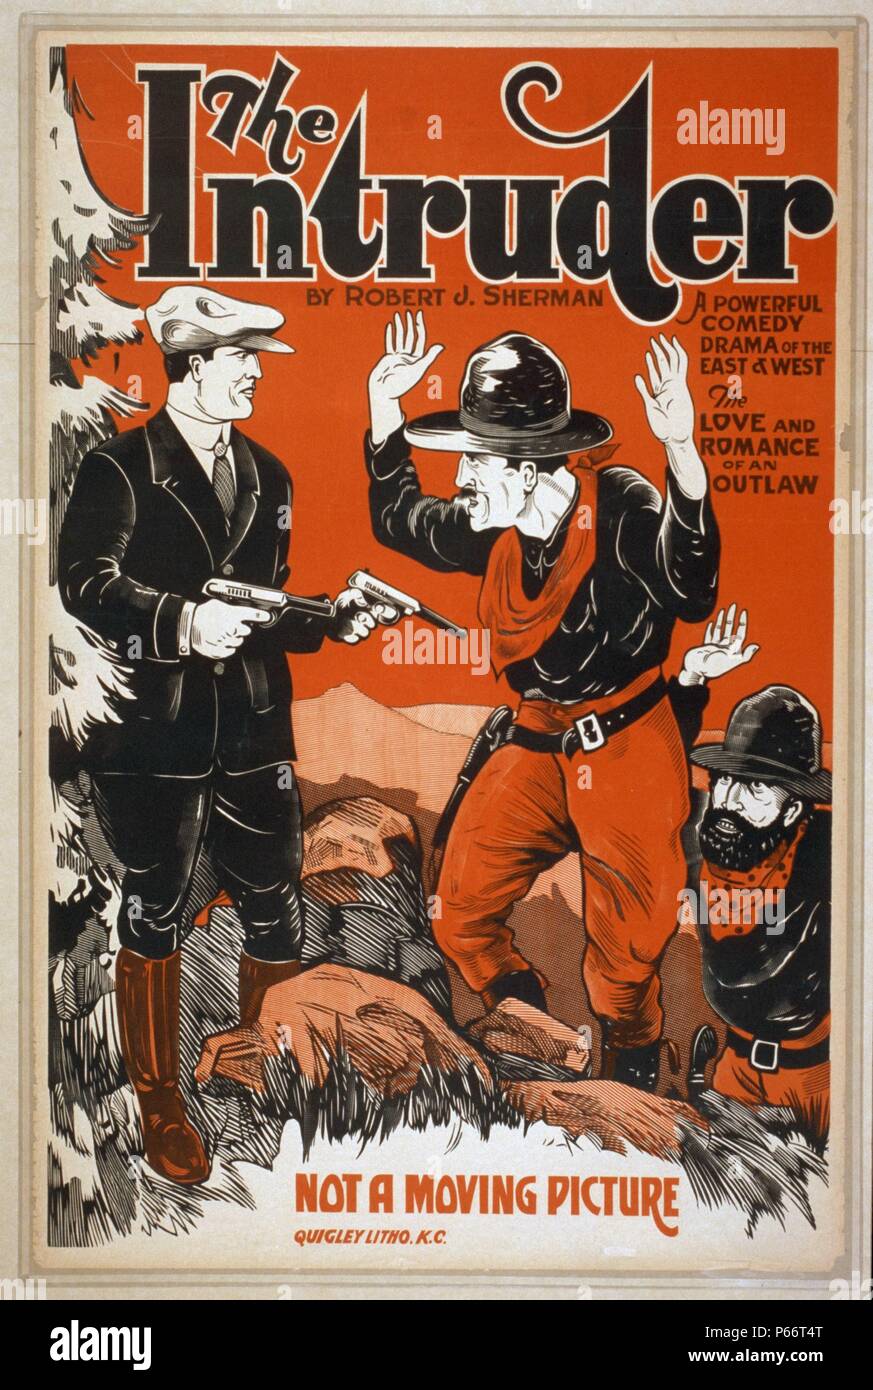 1910 El intruso un poderoso drama cómico del Este y Oeste (el amor y el romance de un proscrito), por Robert J. Sherman. Murió en 1939. Foto de stock